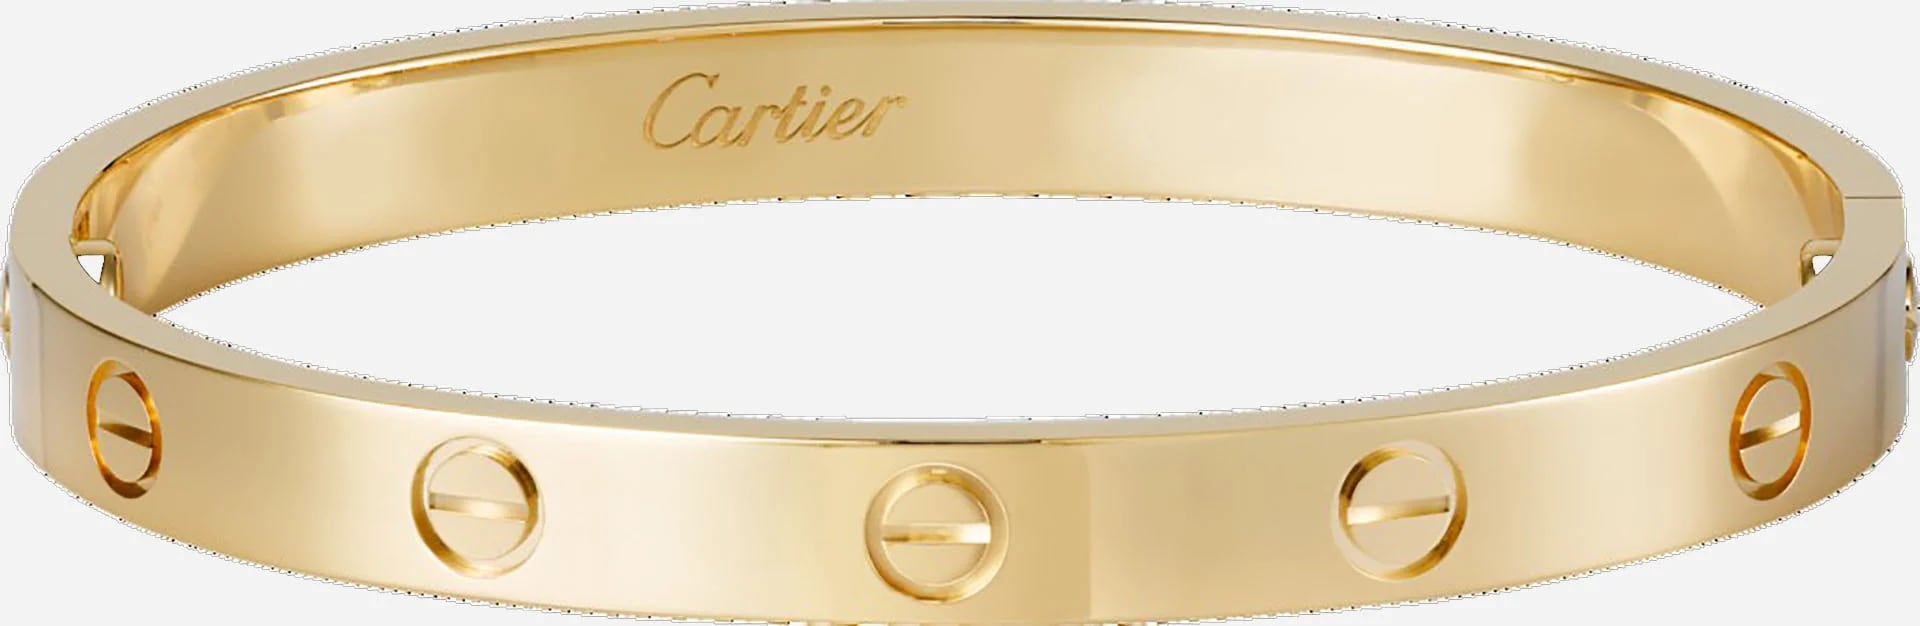 Cartier es una de las marcas de joyería más importantes del mundo. Estas esclavas pertenecen a la línea “Love” de la colección “Cartier Classic”. En oro amarillo de 18 kilates, es una de las más vendidas a nivel mundial. Esta colección empezó en 1970 y nunca más paró (Cartier)